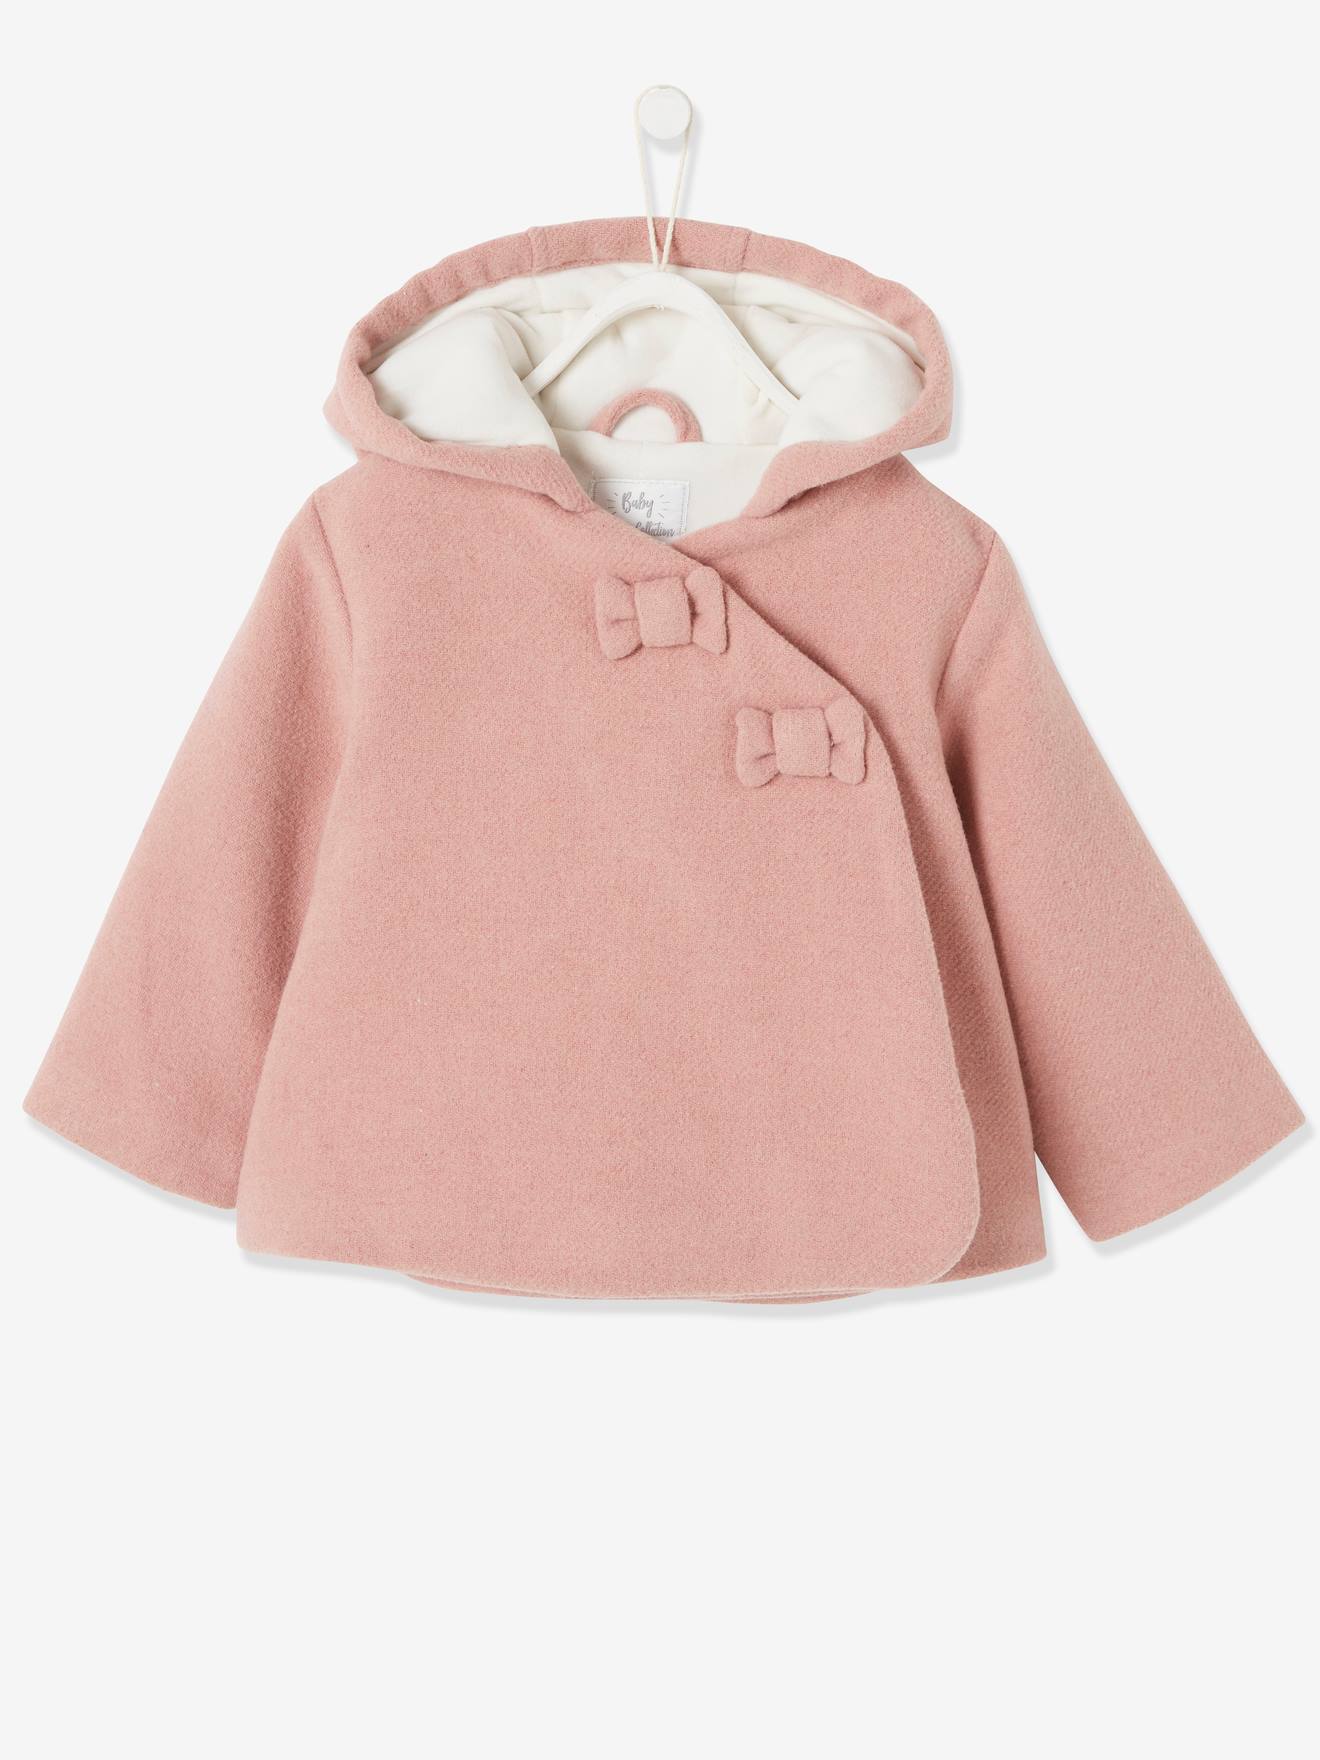 Manteau à capuche bébé fille lainage doublé et ouatiné vieux rose